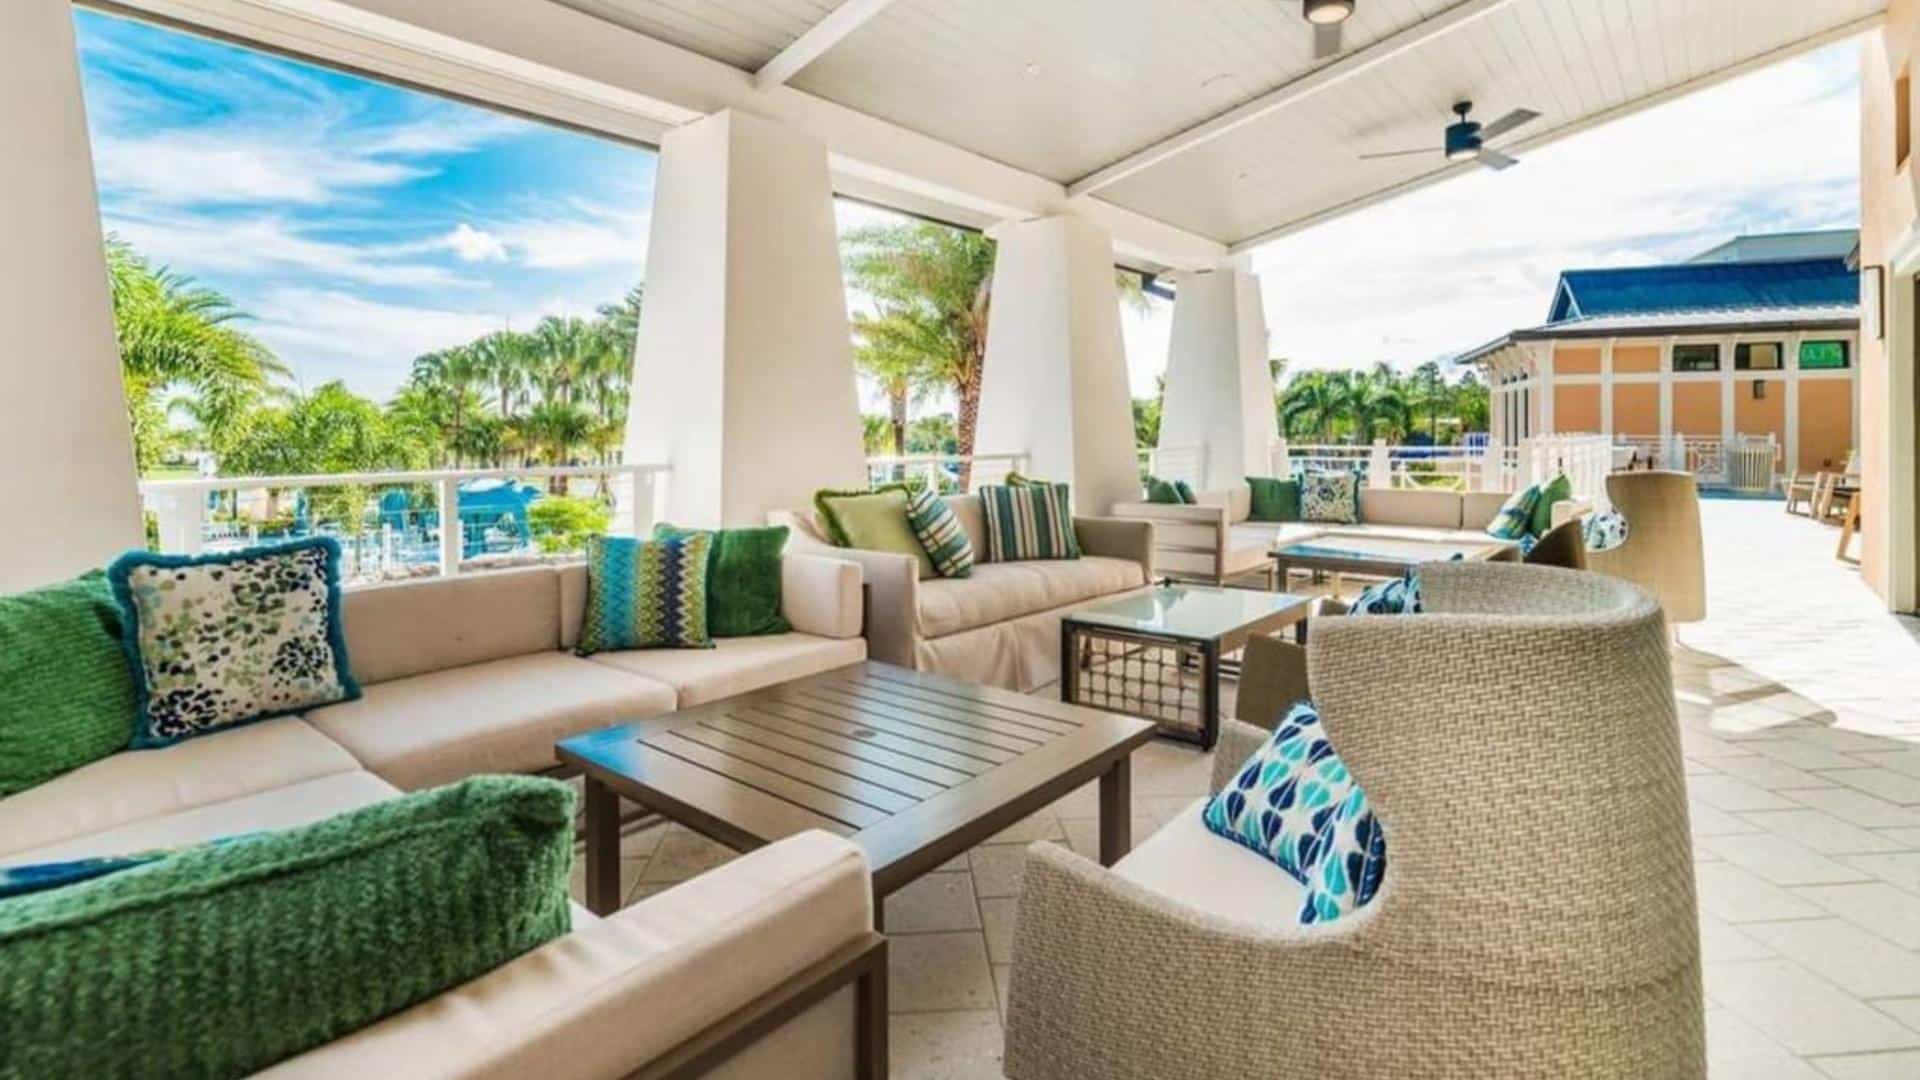 Solara Resort - Relax on Vacation in Orlando